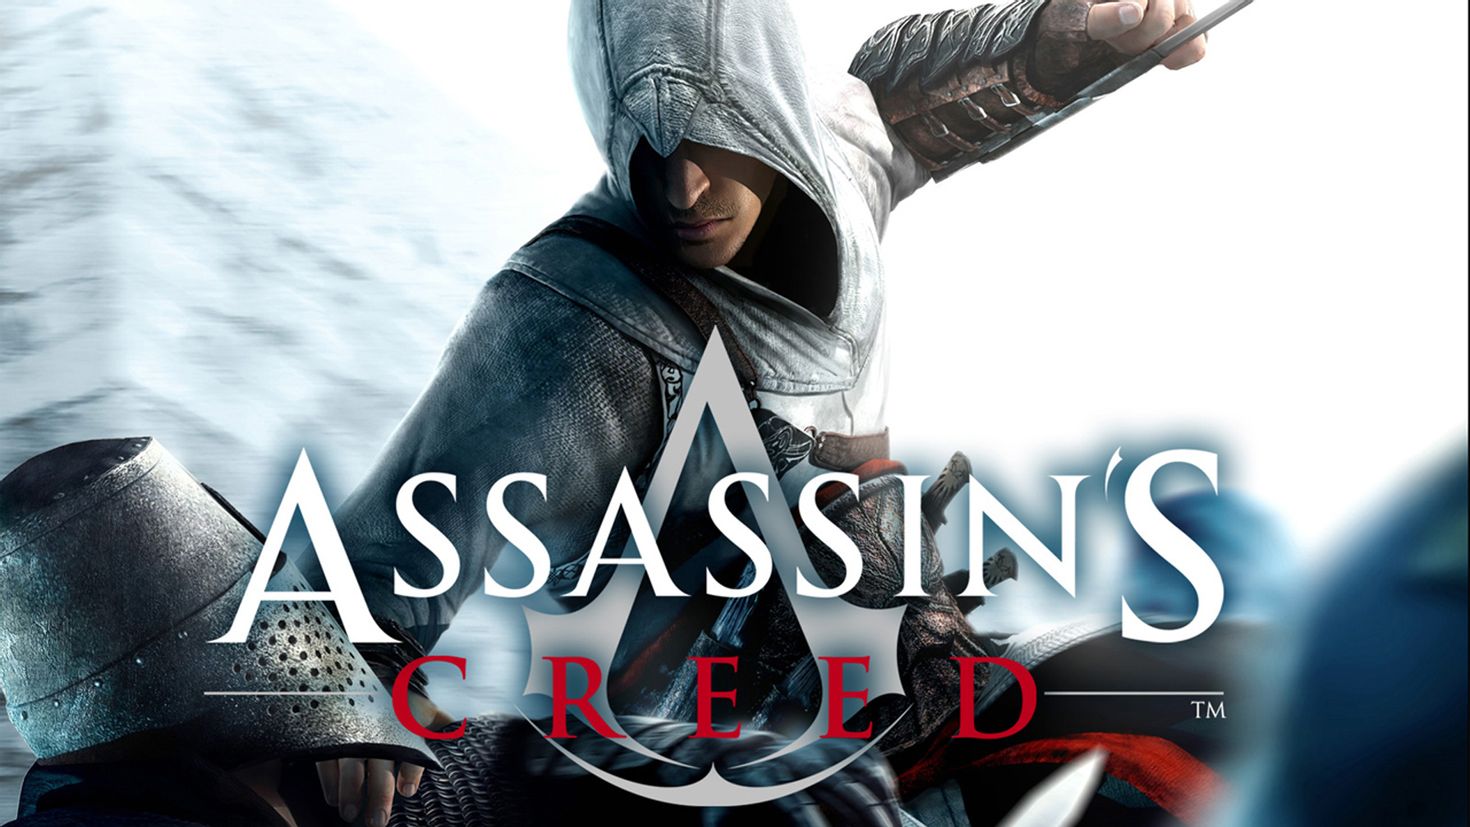 Первые ассасины игра. Обложка ассасин Крид 2007. Ассасин Крид 1 диск. Ассасин Крид Альтаир. Assassin's Creed 2007 обложка.